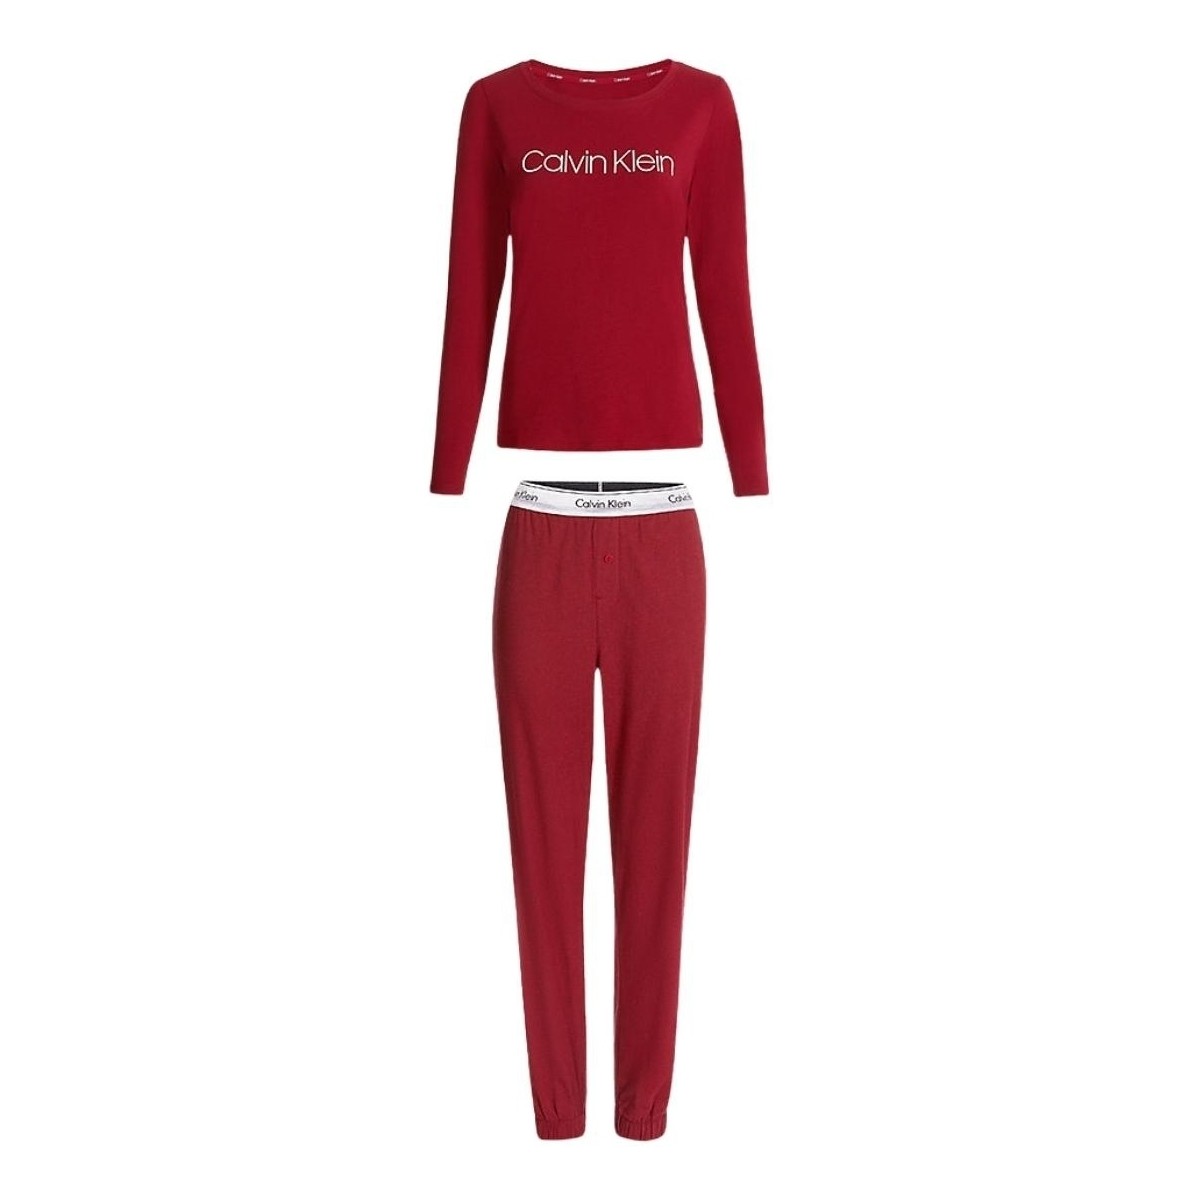 Vêtements Femme Pyjamas / Chemises de nuit Calvin Klein Jeans Ensemble de pyjama femme  Ref 58941 TX4 Rouge Rouge